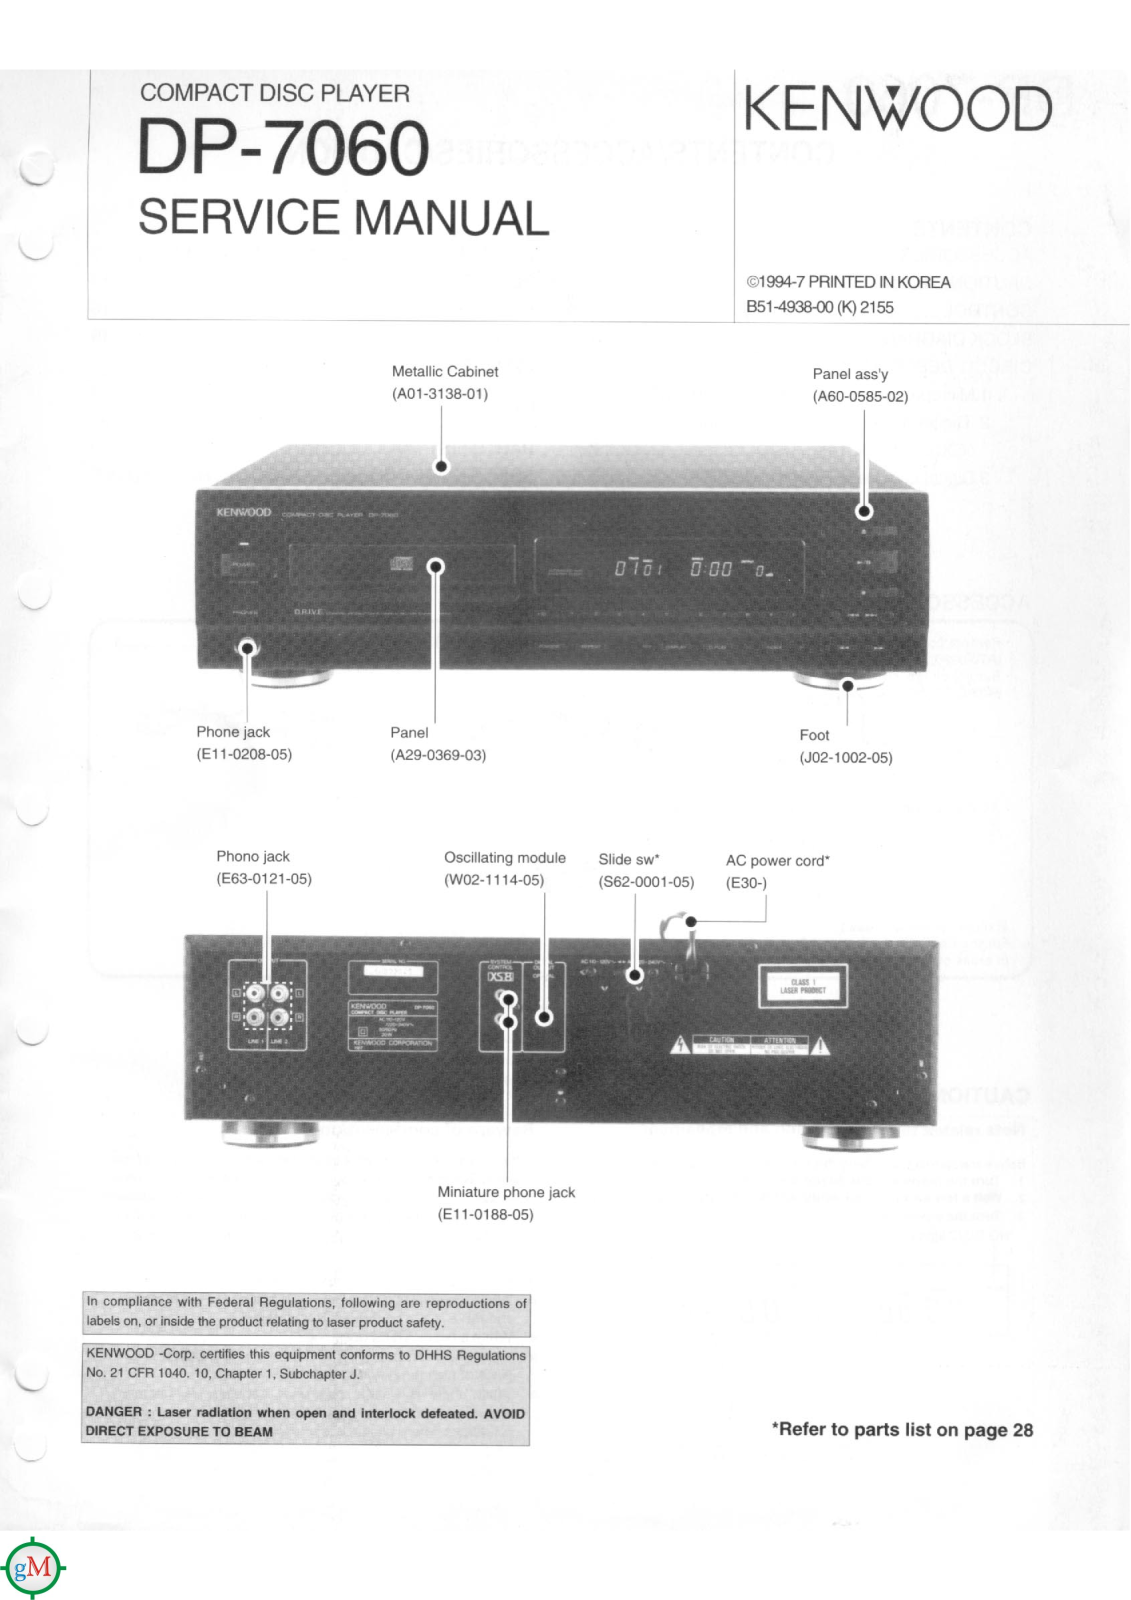 Kenwood DP-7060 Service manual